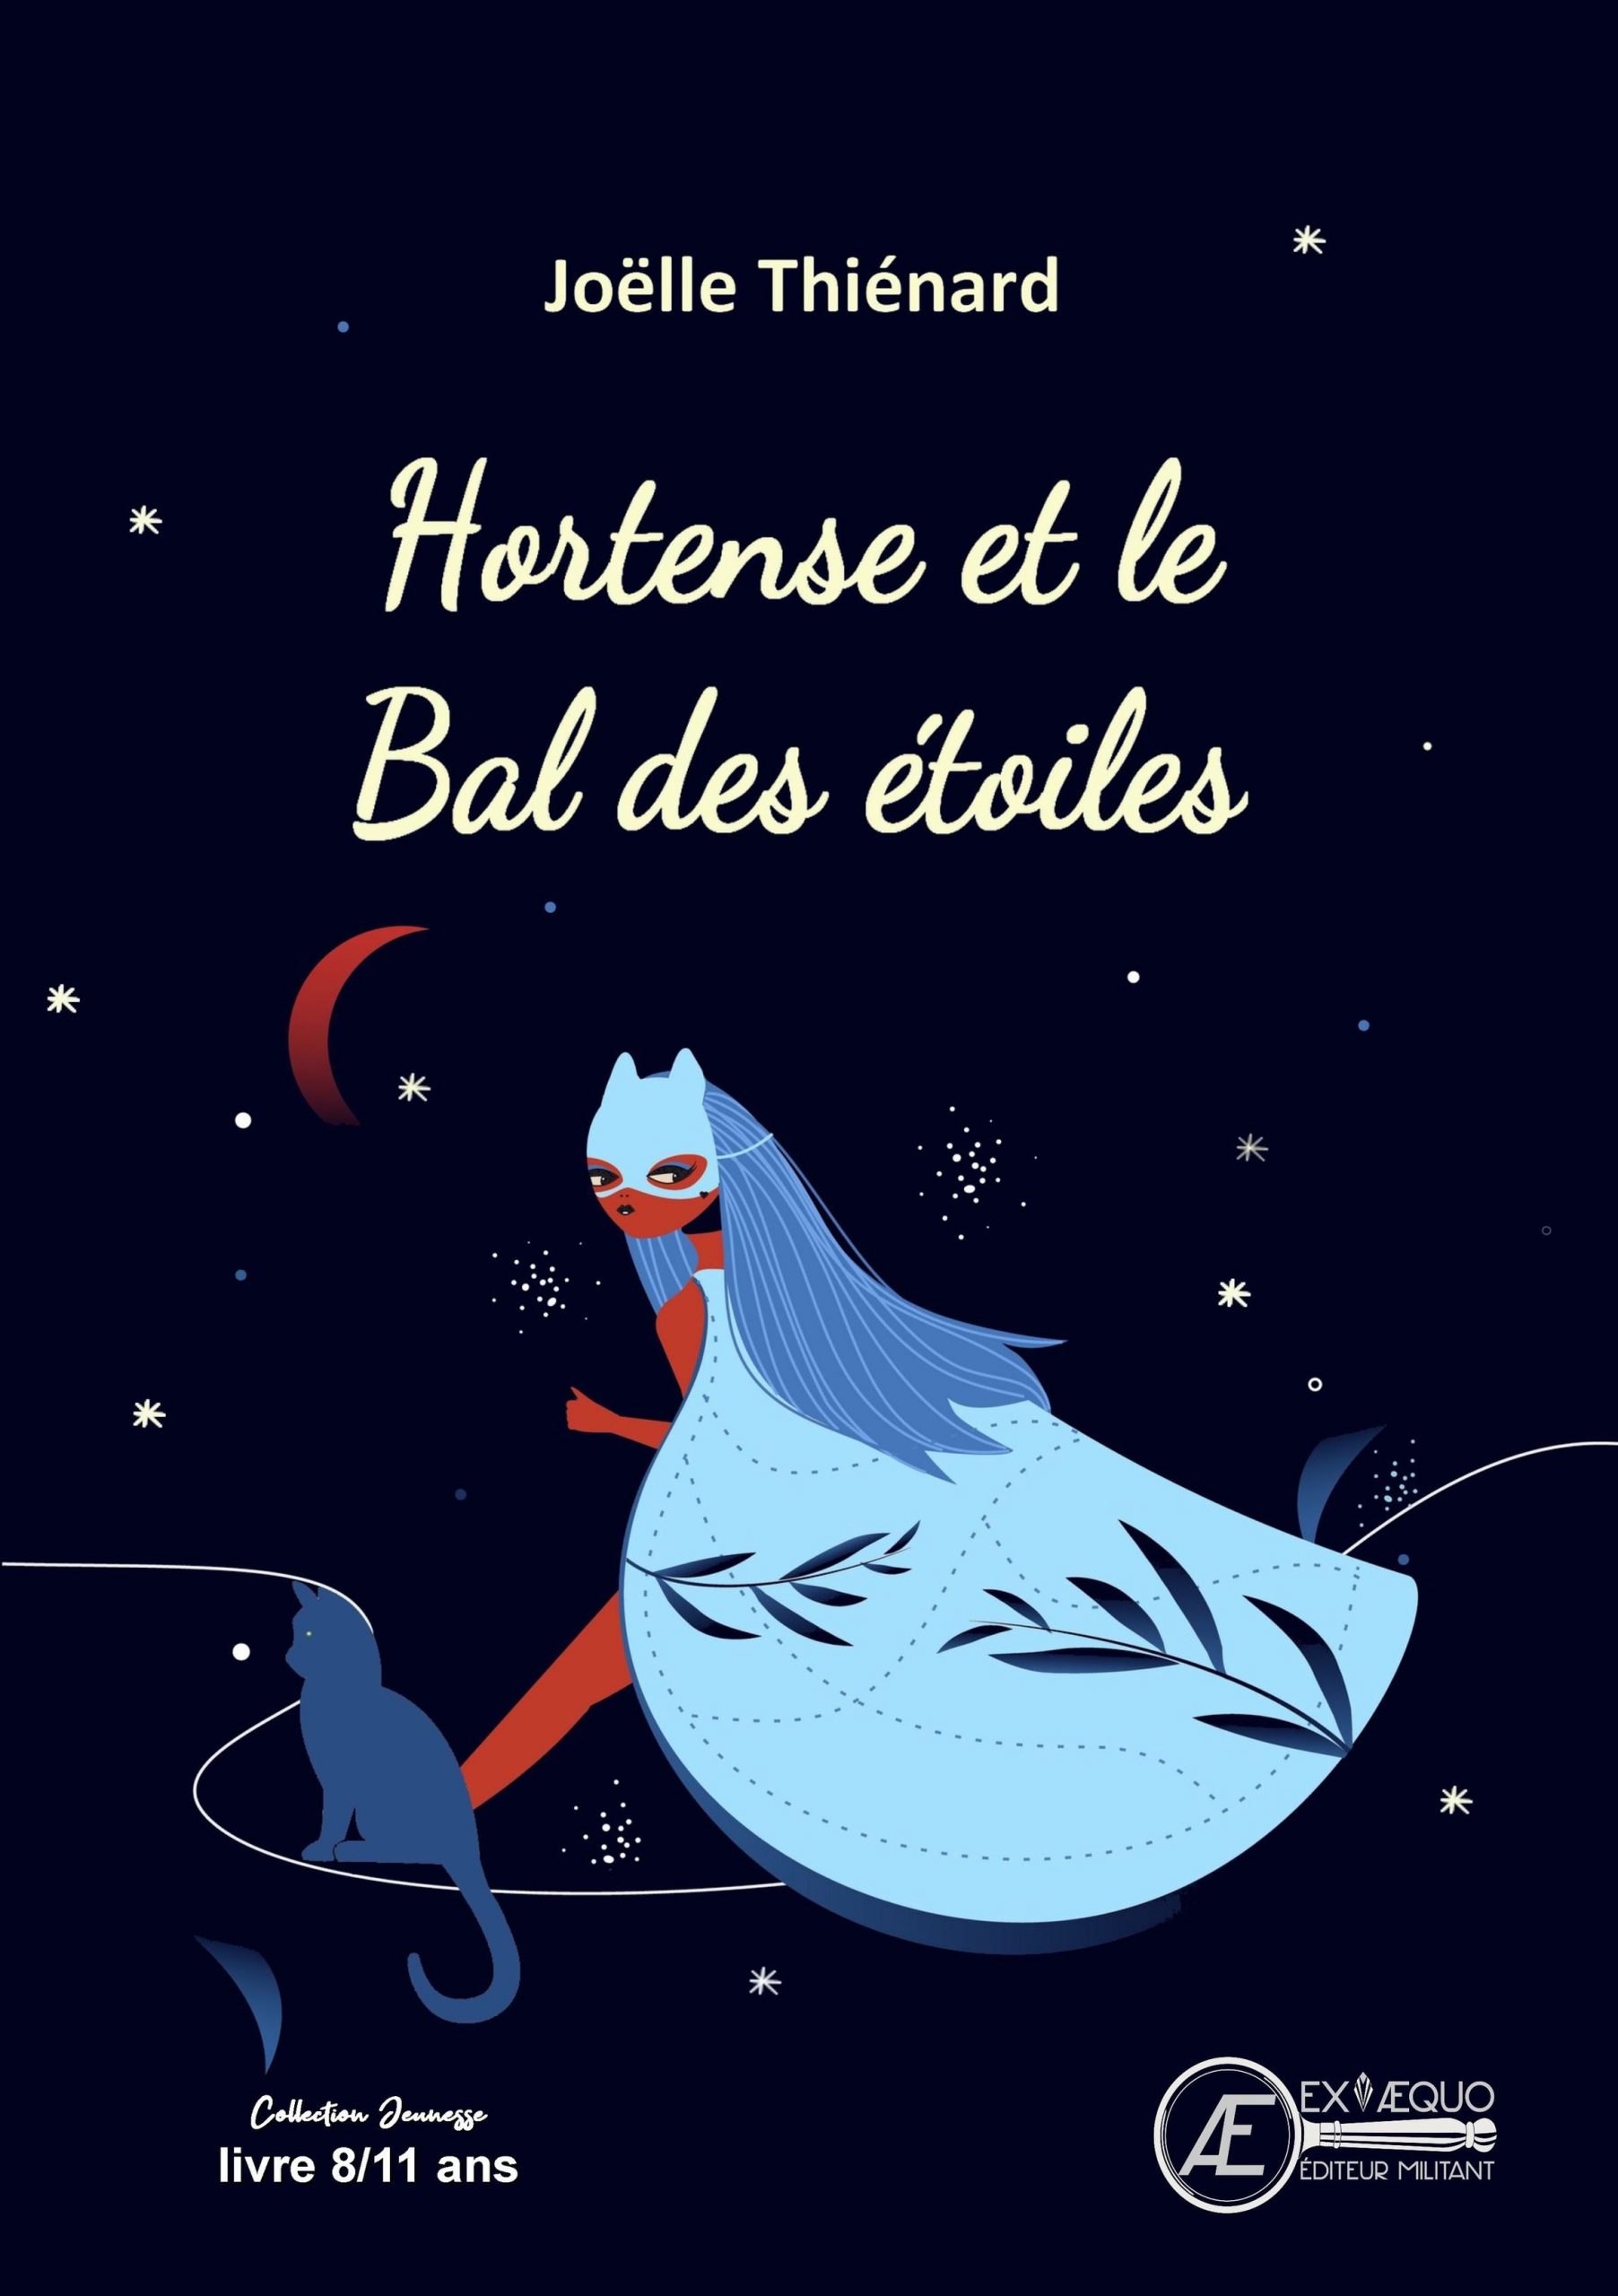 You are currently viewing Hortense et le bal des étoiles, de Joëlle Thiénard